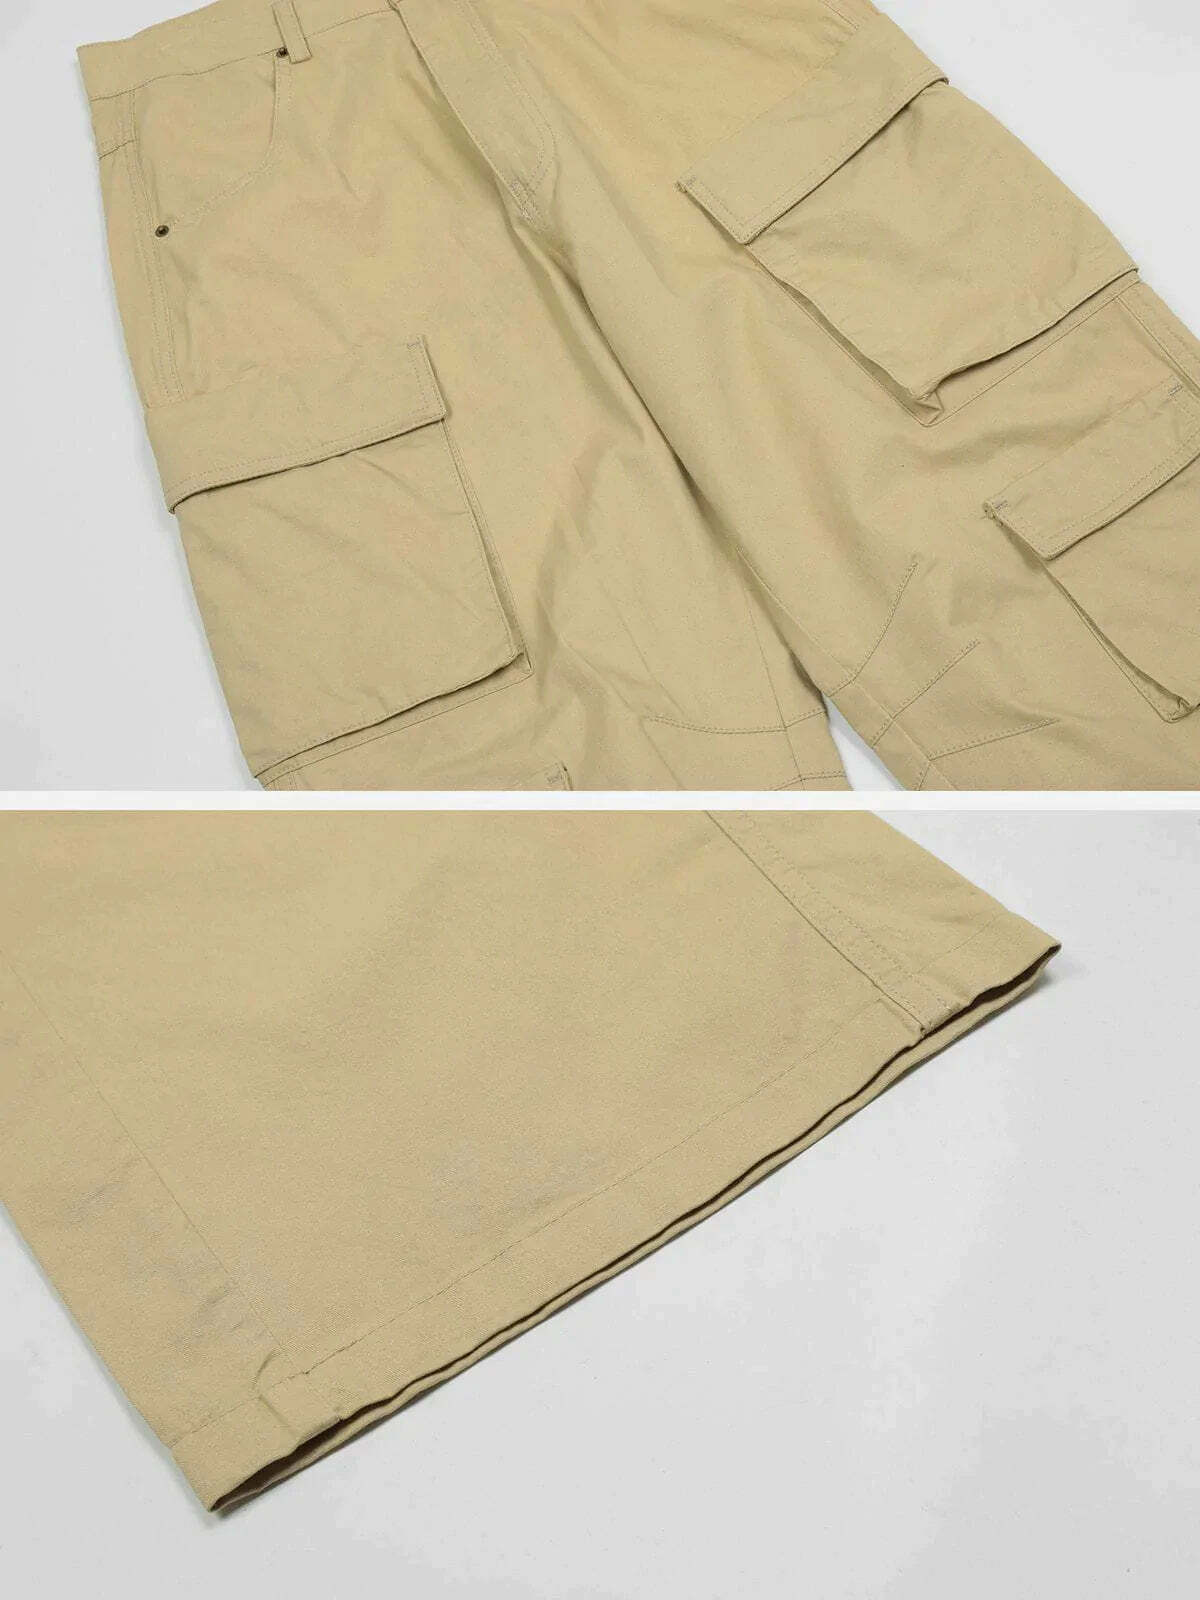 loose fit solid color pants effortlessly chic & versatile 2265